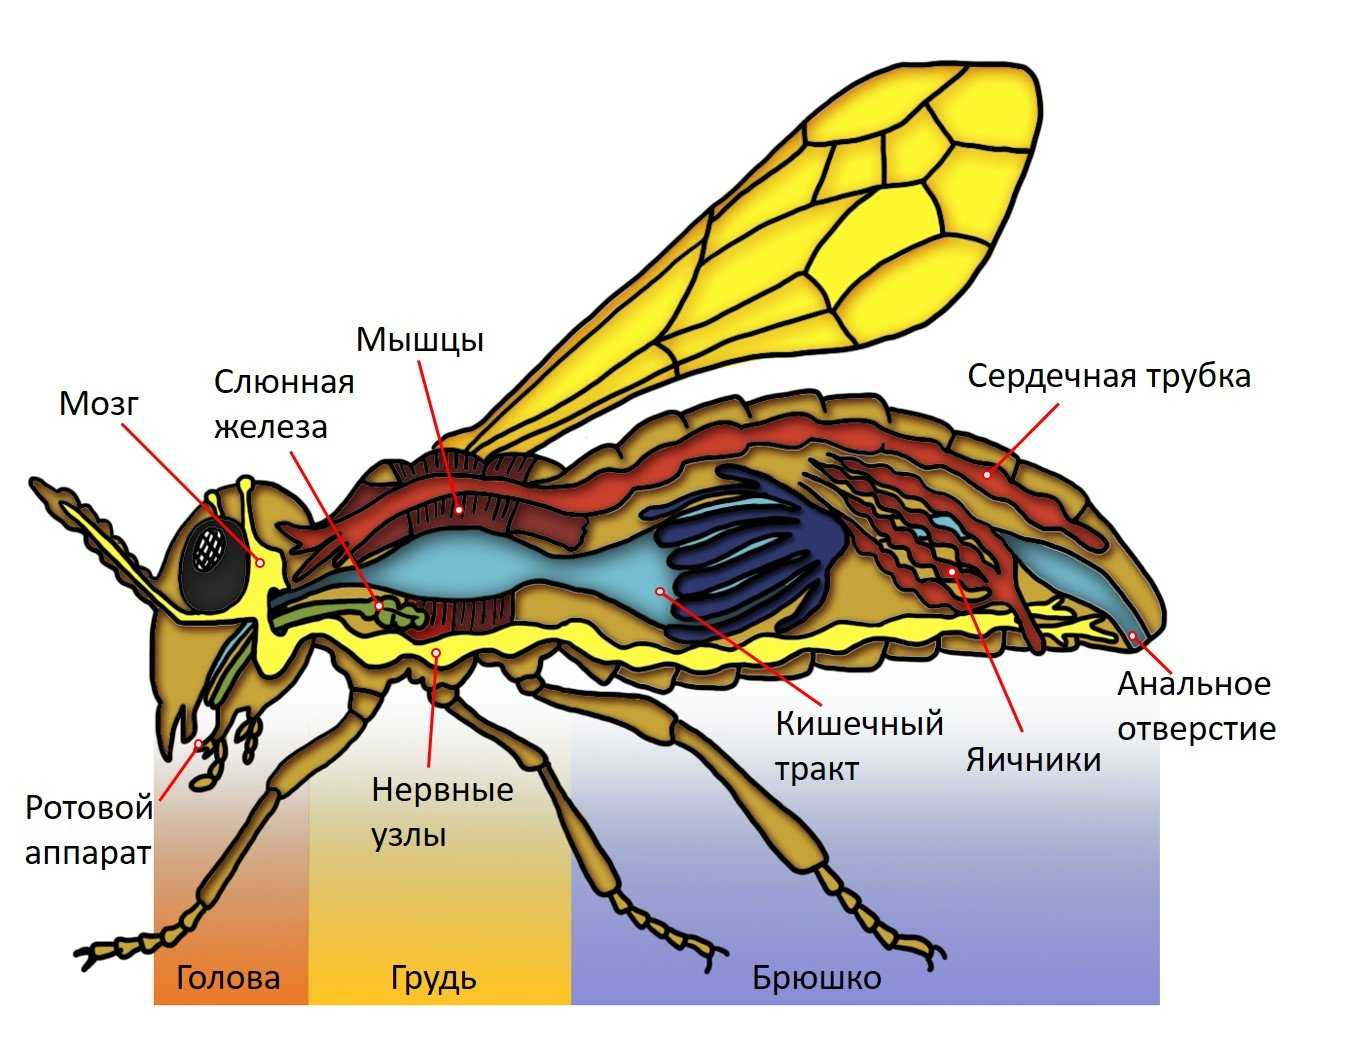 Какие системы у насекомых. Нервная система членистоногих насекомых. Внутренне строение пчелы. Членистоногие строение систем. Строение пчелы хитин.